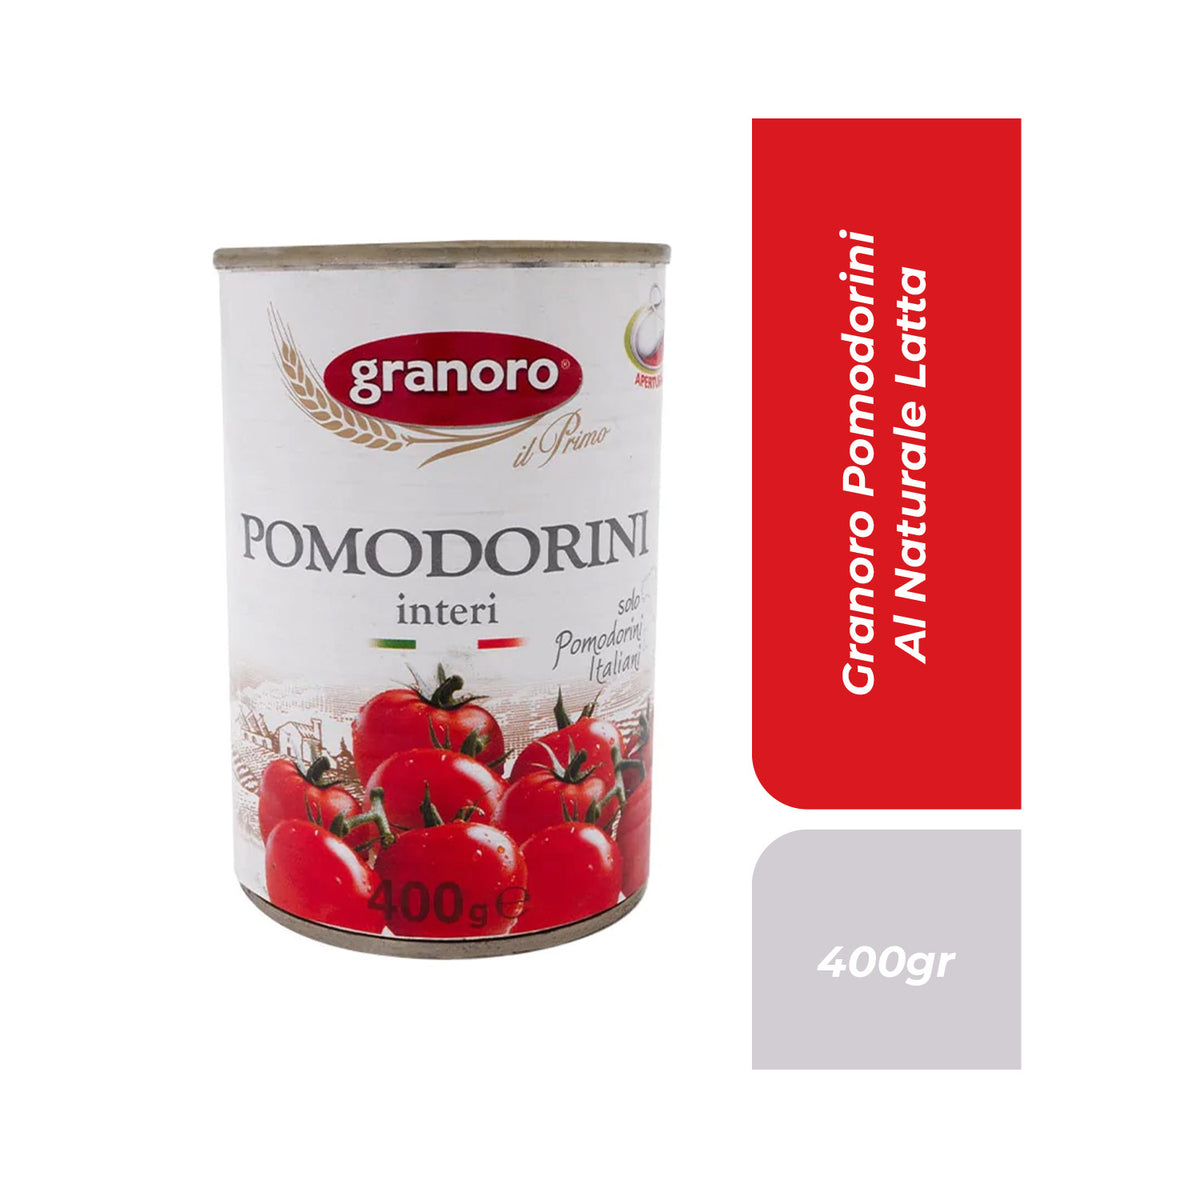 Granoro Pomodorini Al Naturale Latta 400gr.